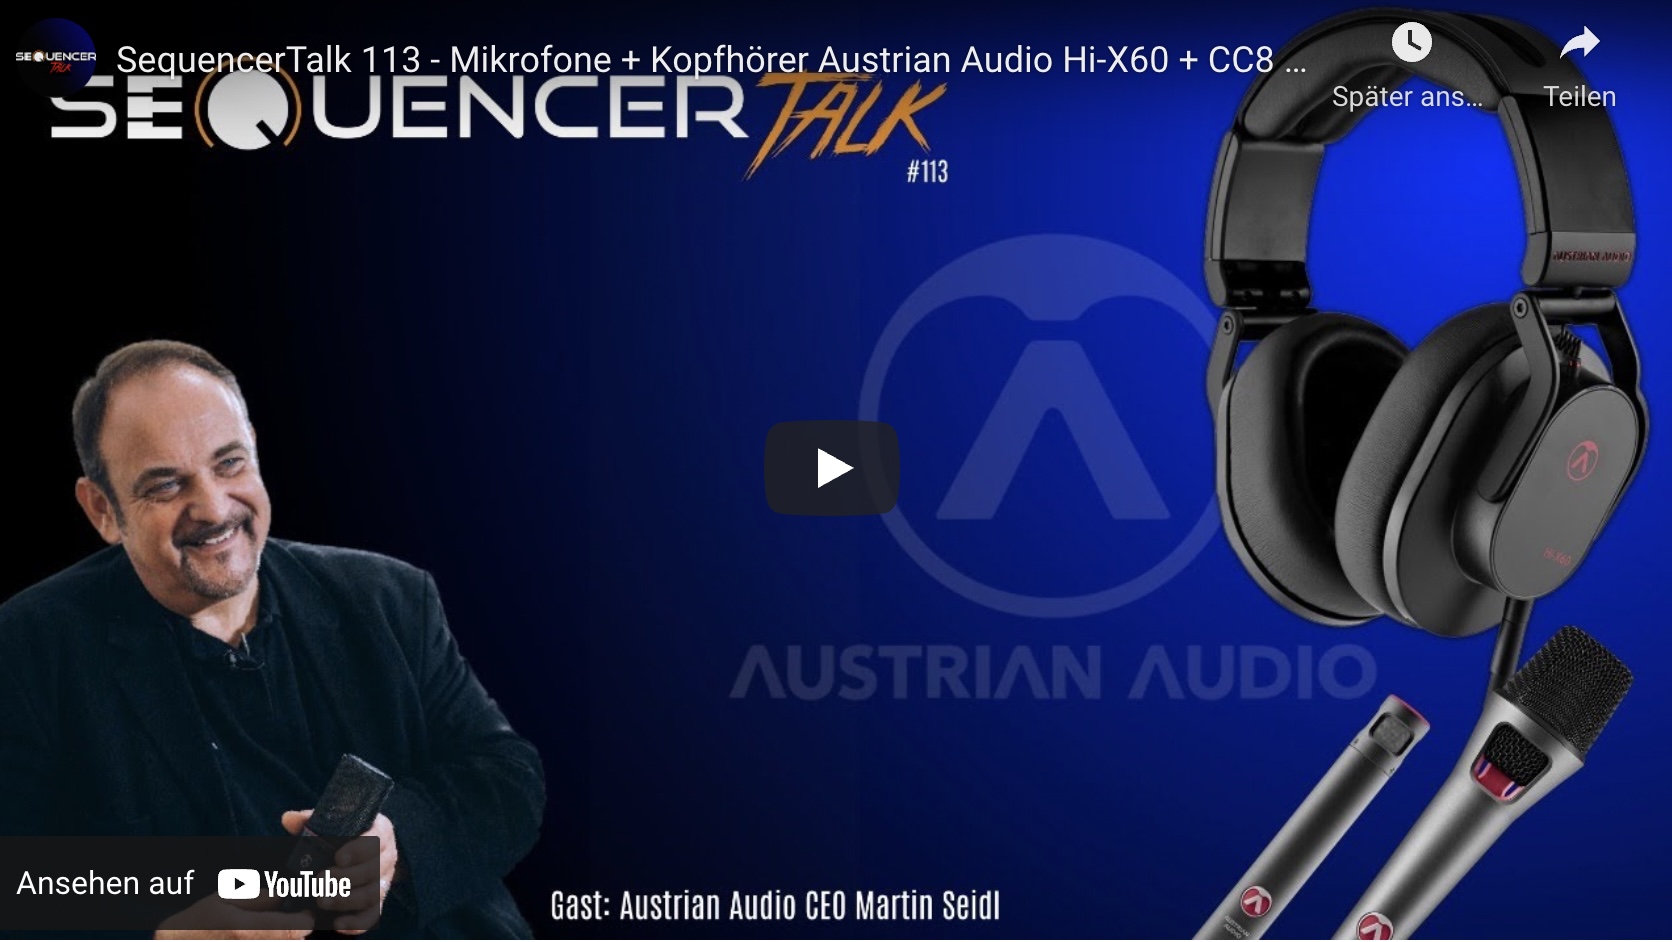 SequencerTalk 113 Austrian Audio